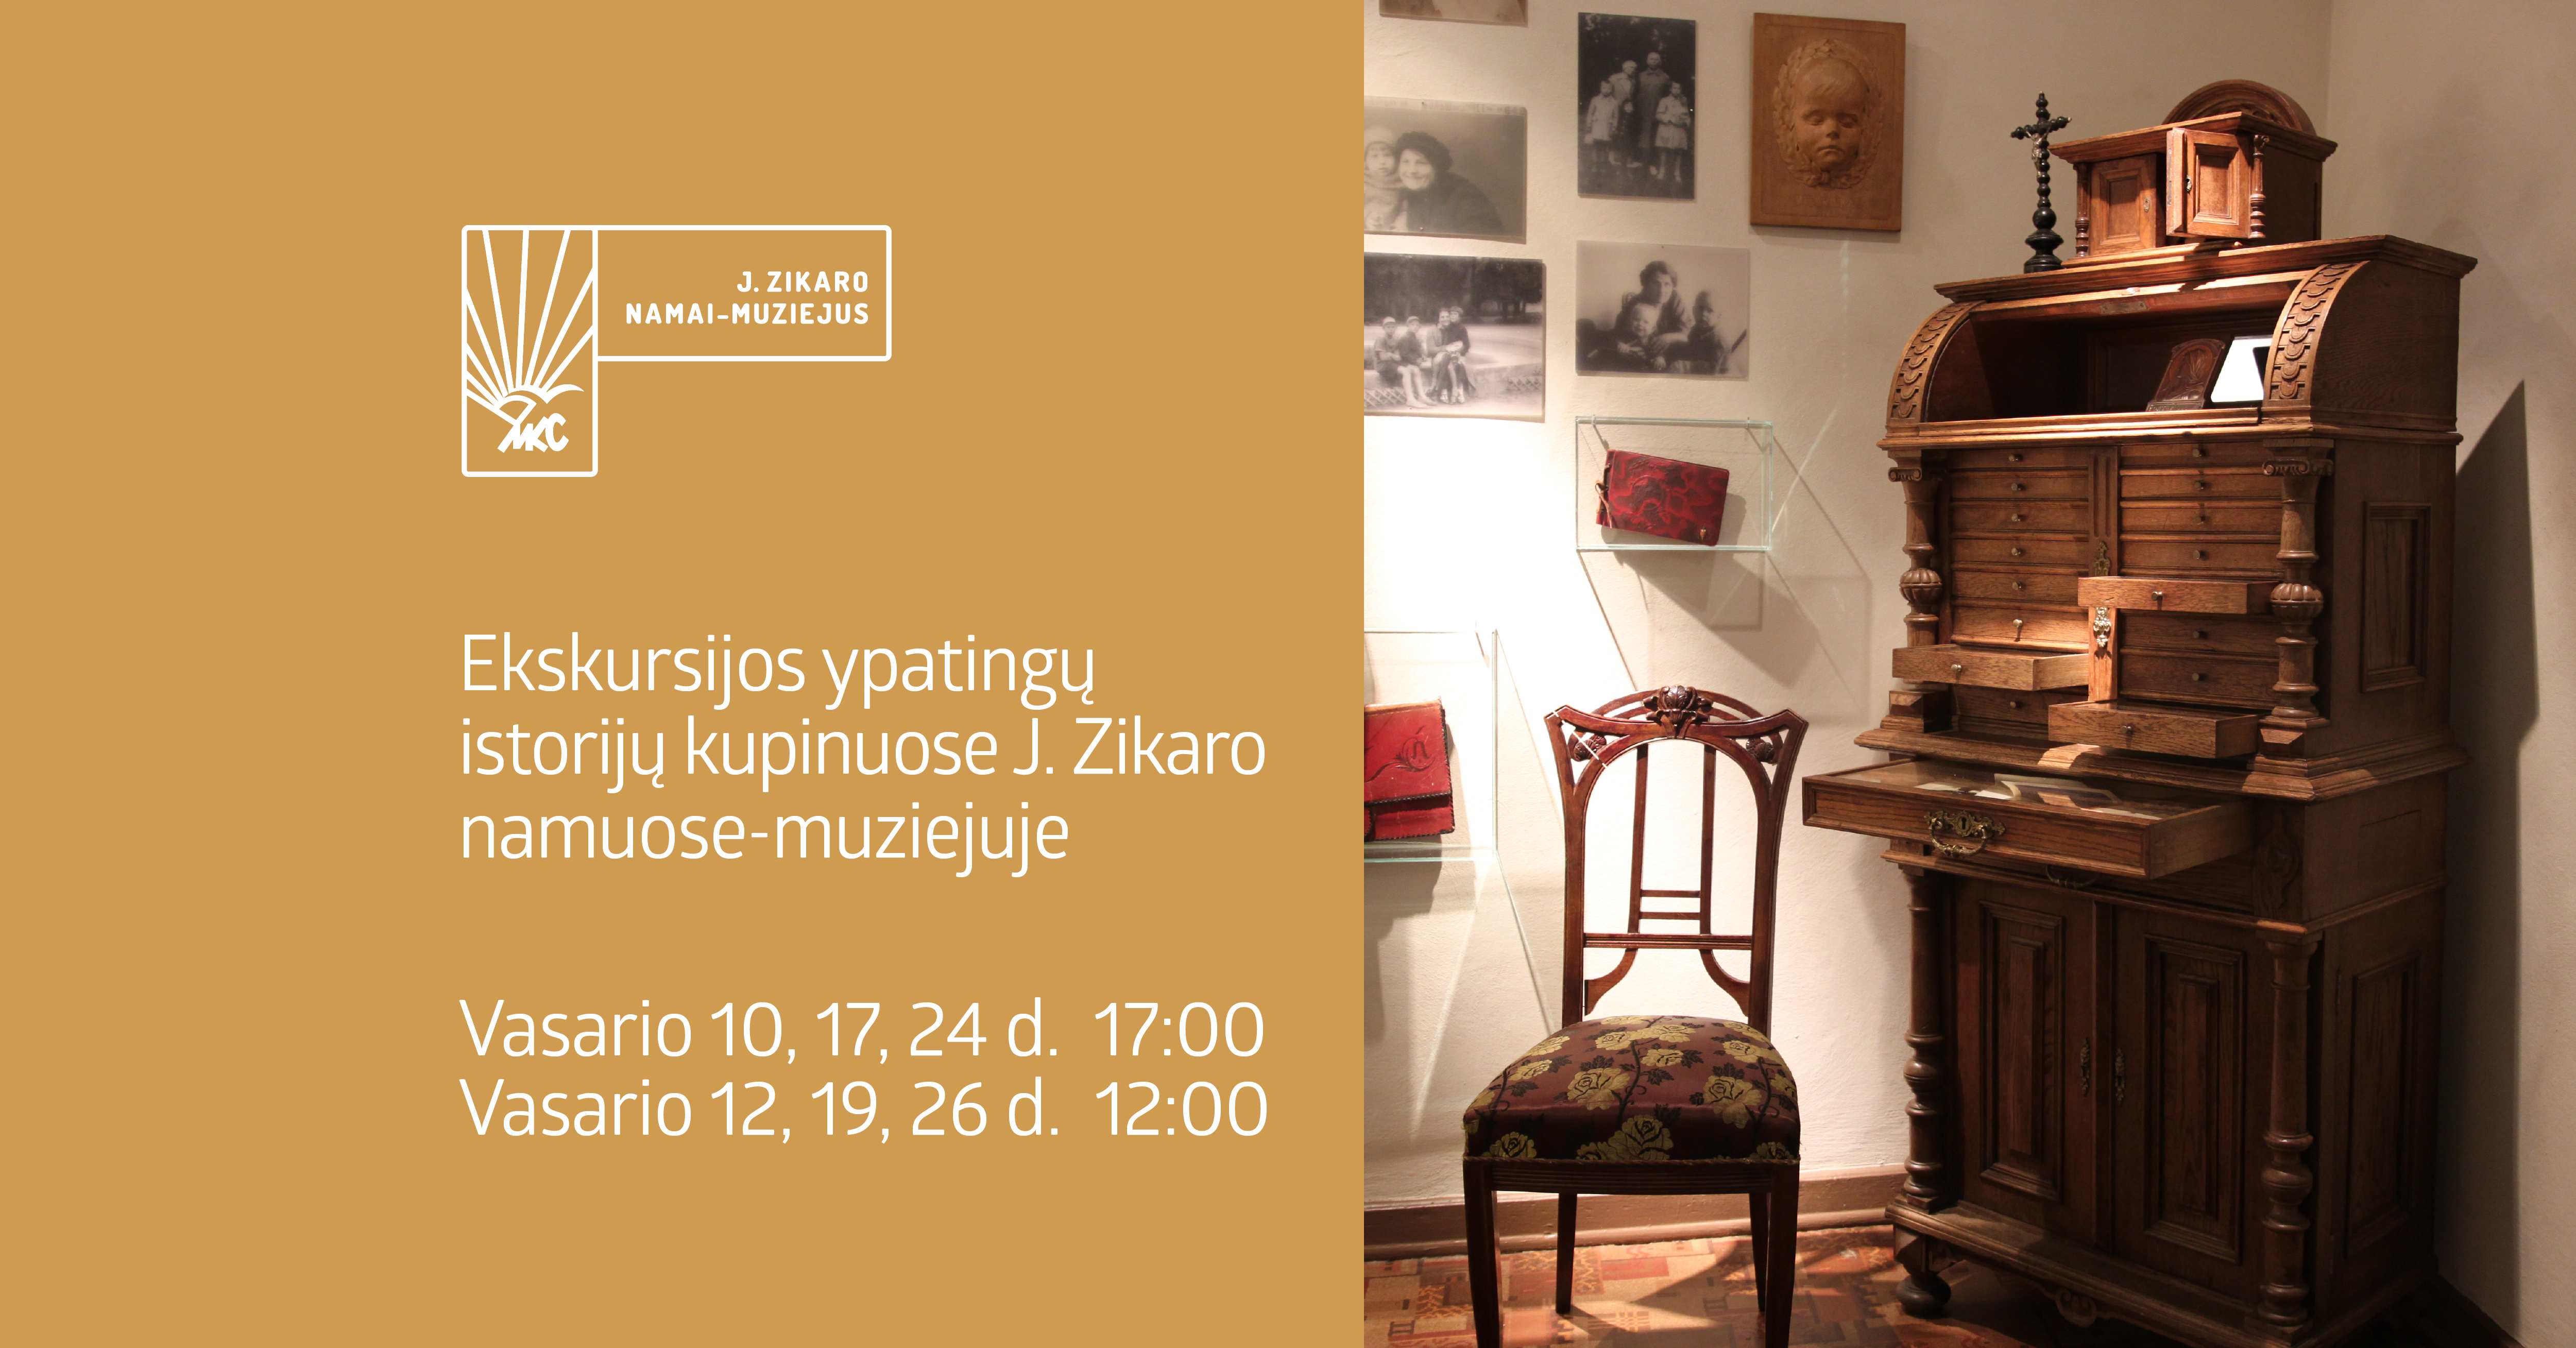 Ekskursijos ypatingų istorijų kupinuose J. Zikaro namuose-muziejuje